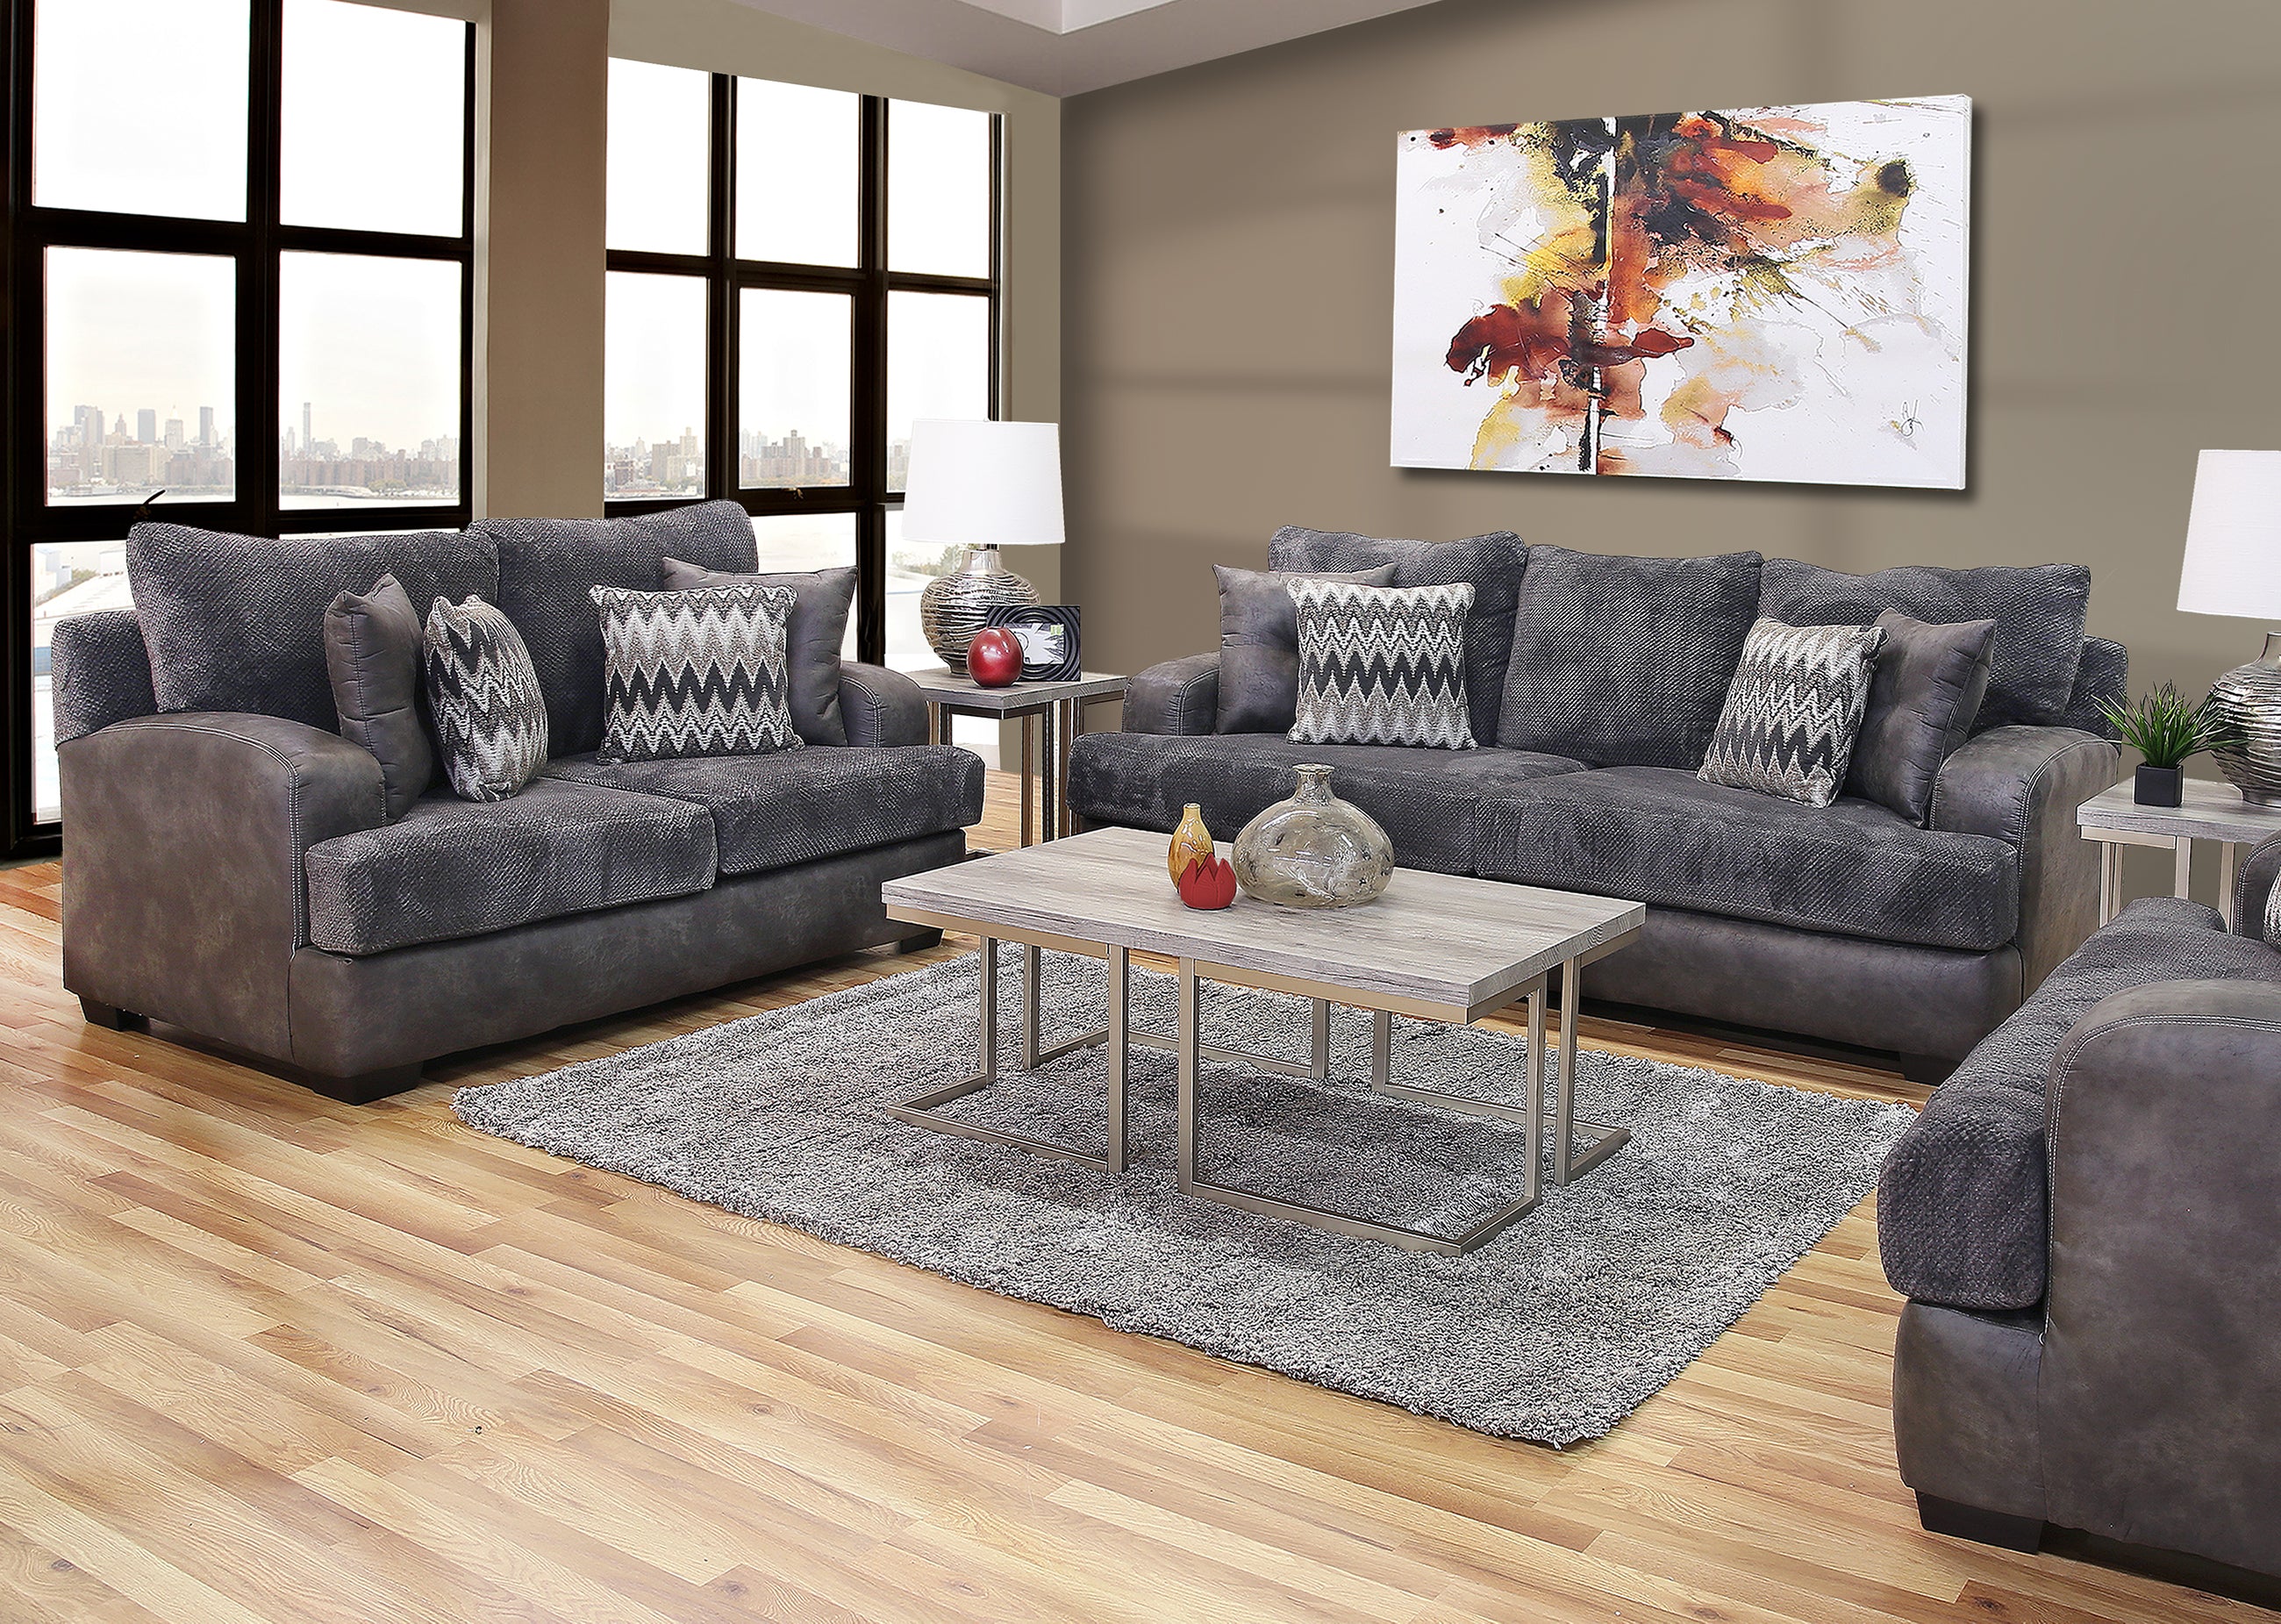 Aesthetic Living Room